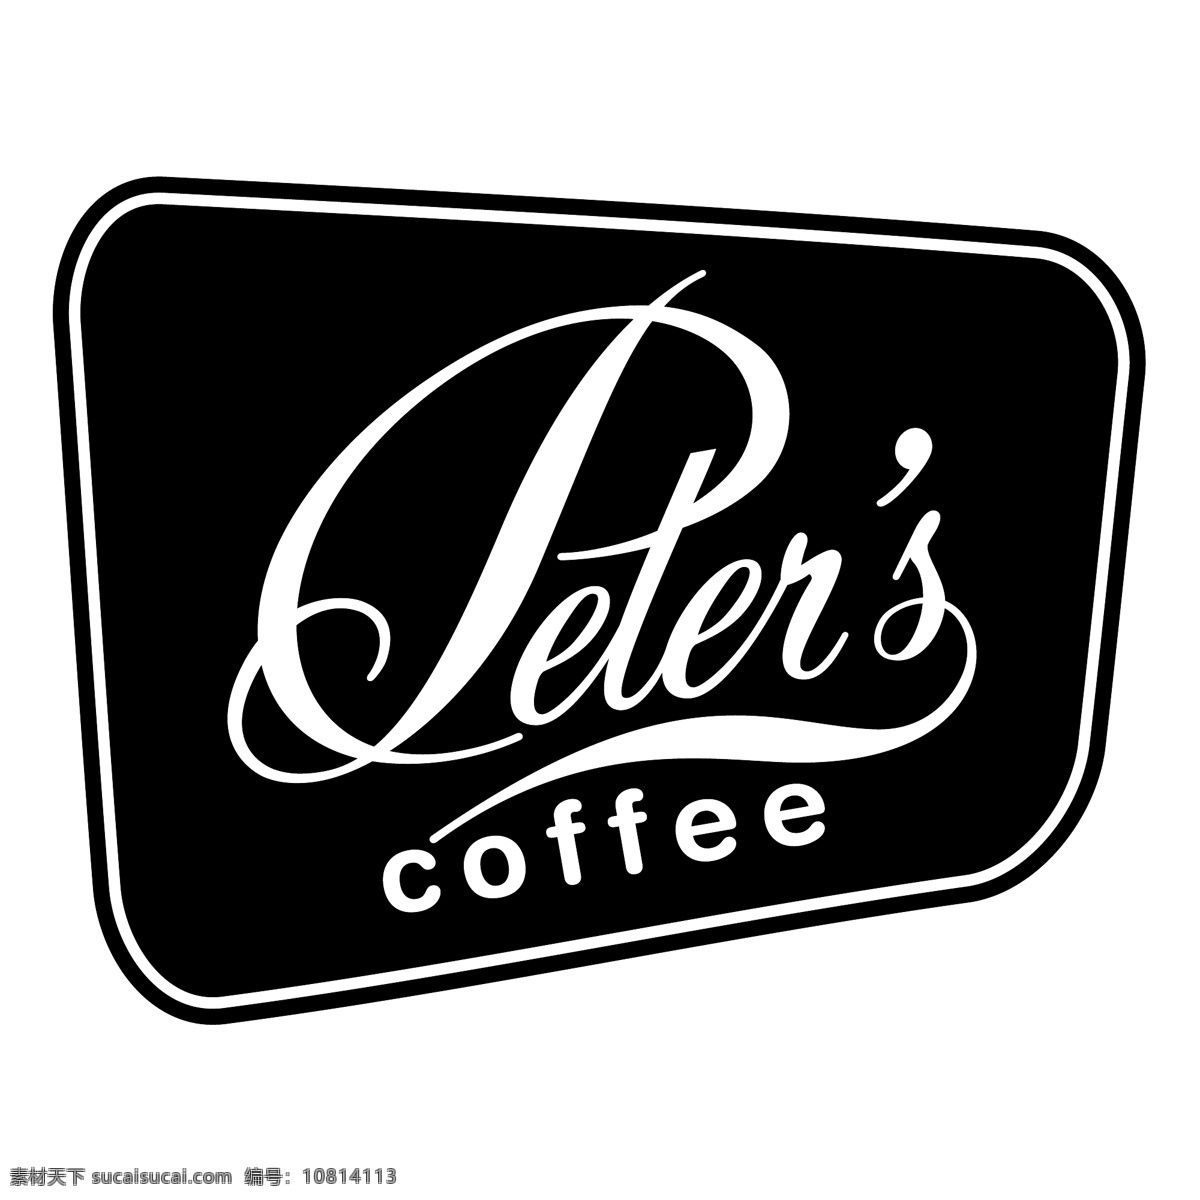 彼得斯咖啡 咖啡 免费 图形 彼得斯 咖啡的图像 矢量 艺术设计 自由的咖啡 艺术 矢量图 建筑家居